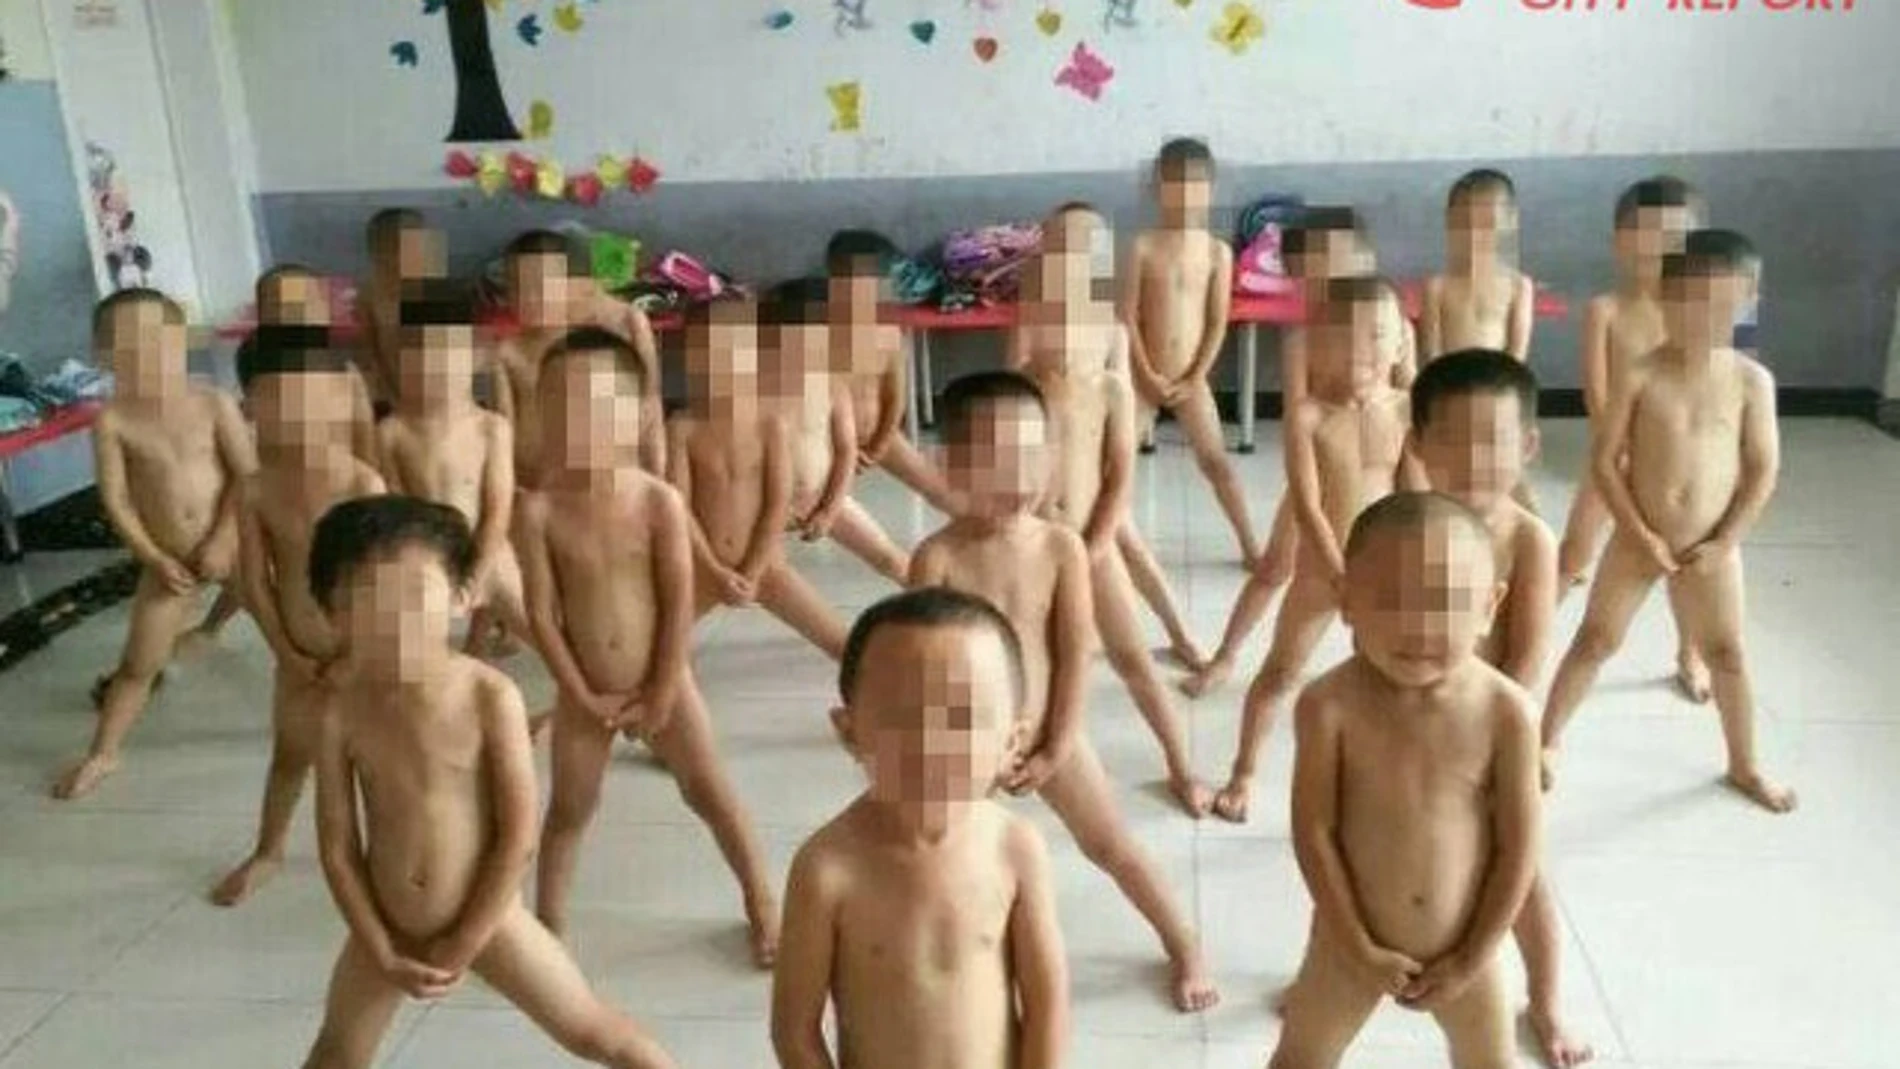 Fotografía a sus alumnos desnudos en la guardería y lo comparte en las redes sociales